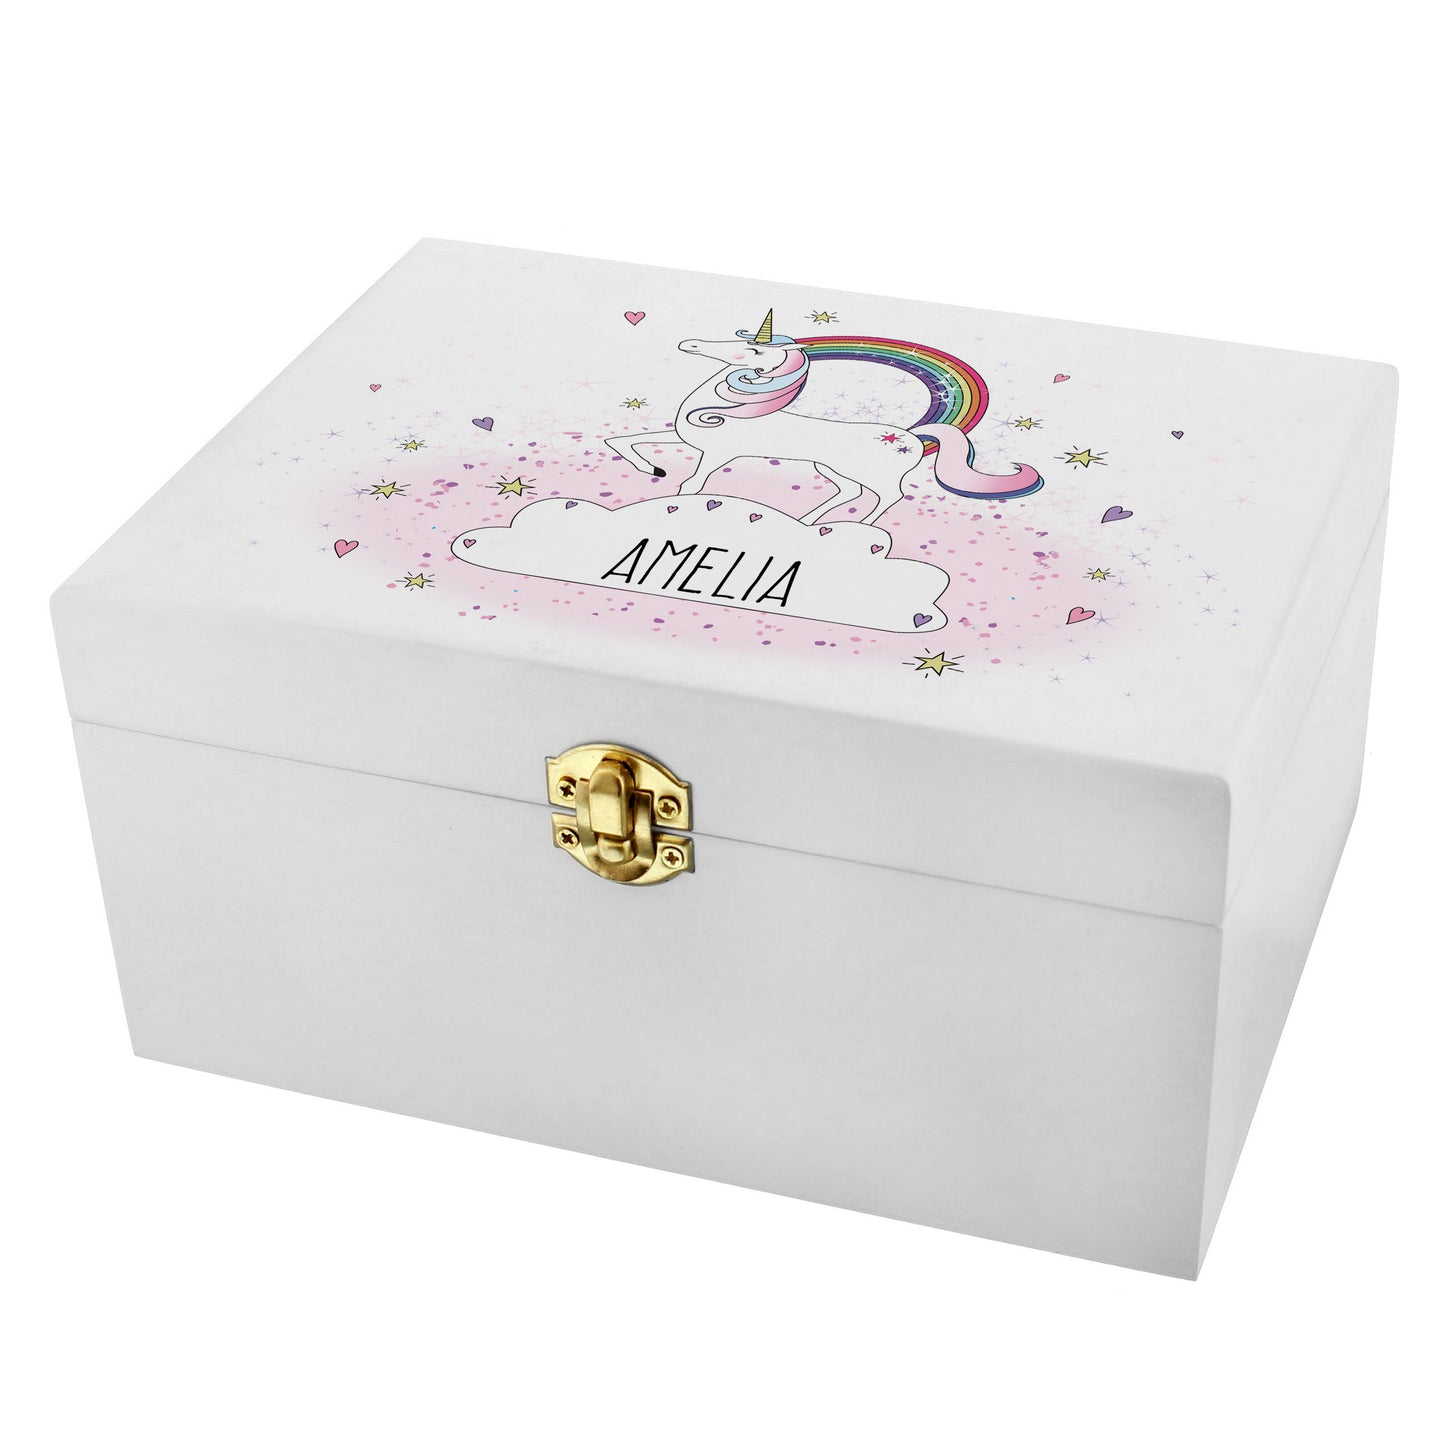 Personalised Unicorn White Wooden Keepsake Box - Personalise It!